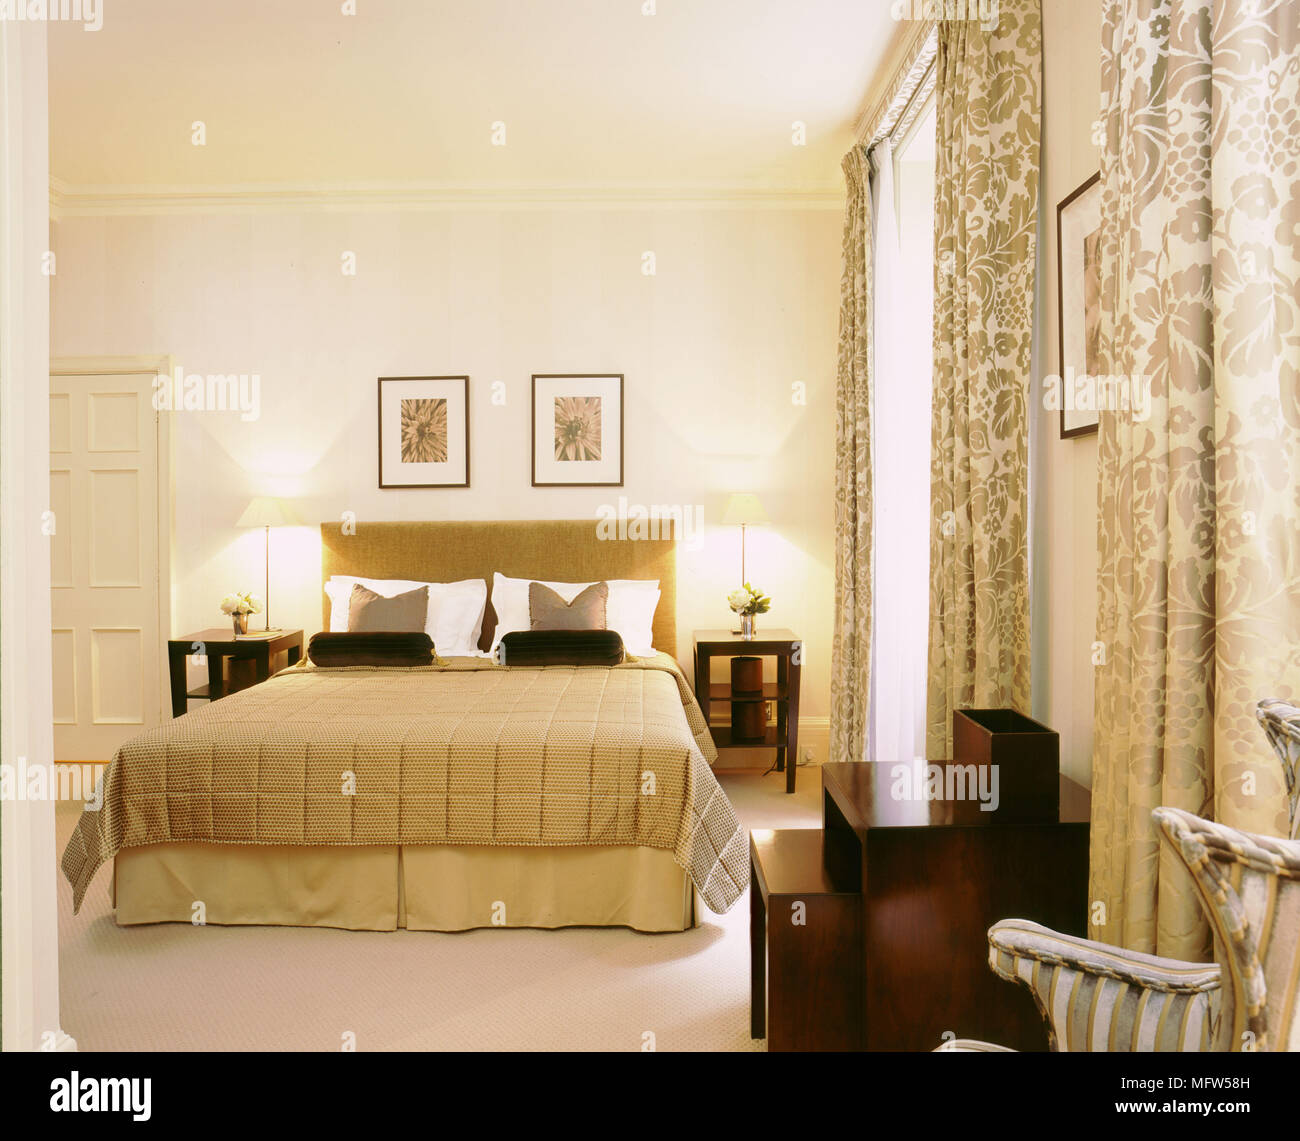 Chambre double rideaux traditionnels d'or couvre-lit tête de lit rembourrée Banque D'Images